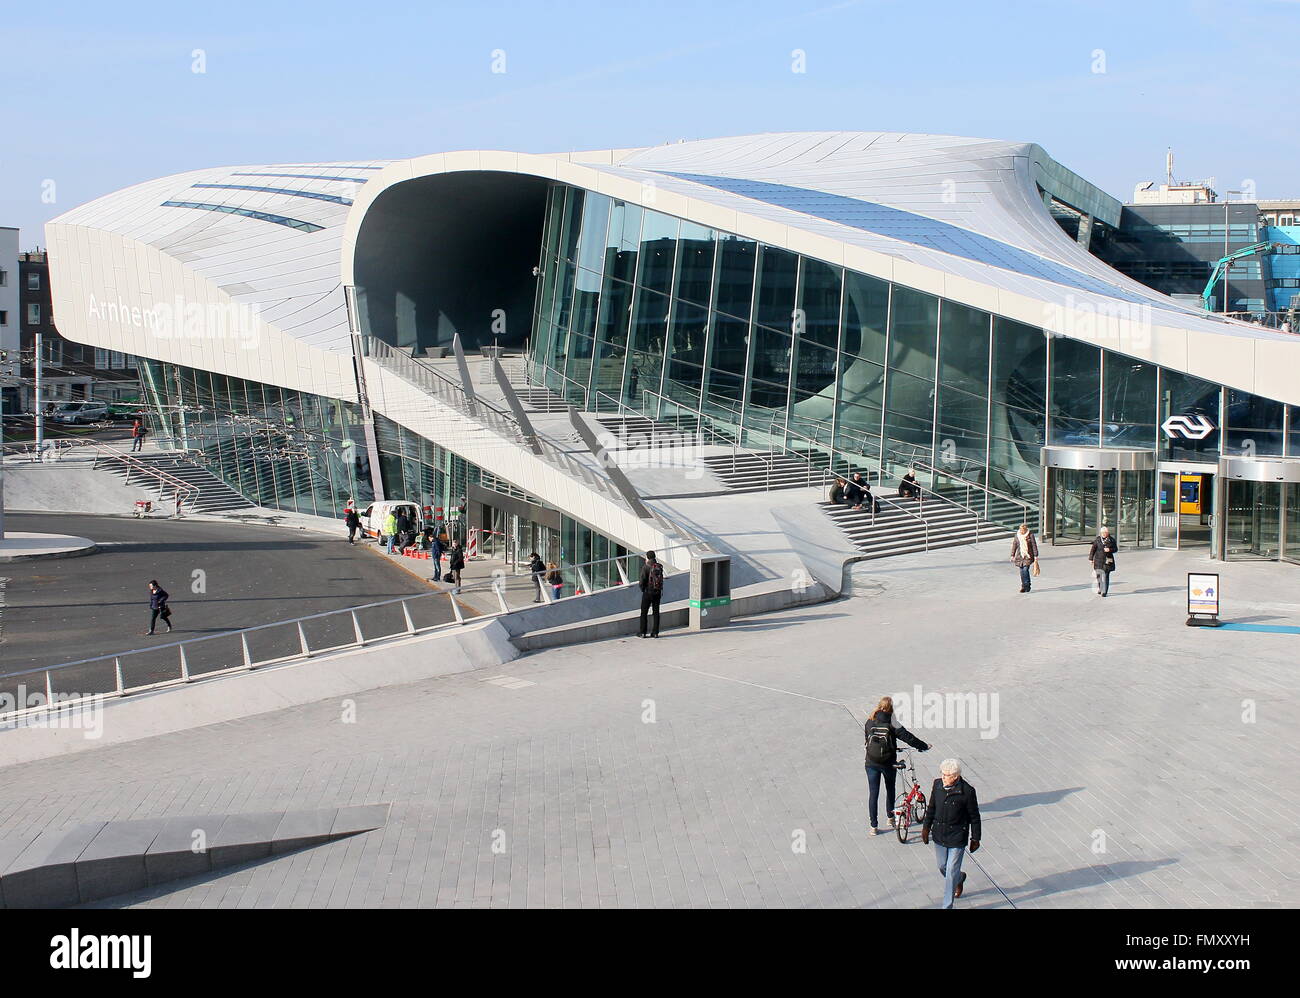 Nuova stazione ferroviaria centrale di Arnhem, Paesi Bassi, progettato dal famoso architetto olandese Ben van Berkel (UNStudio) Foto Stock